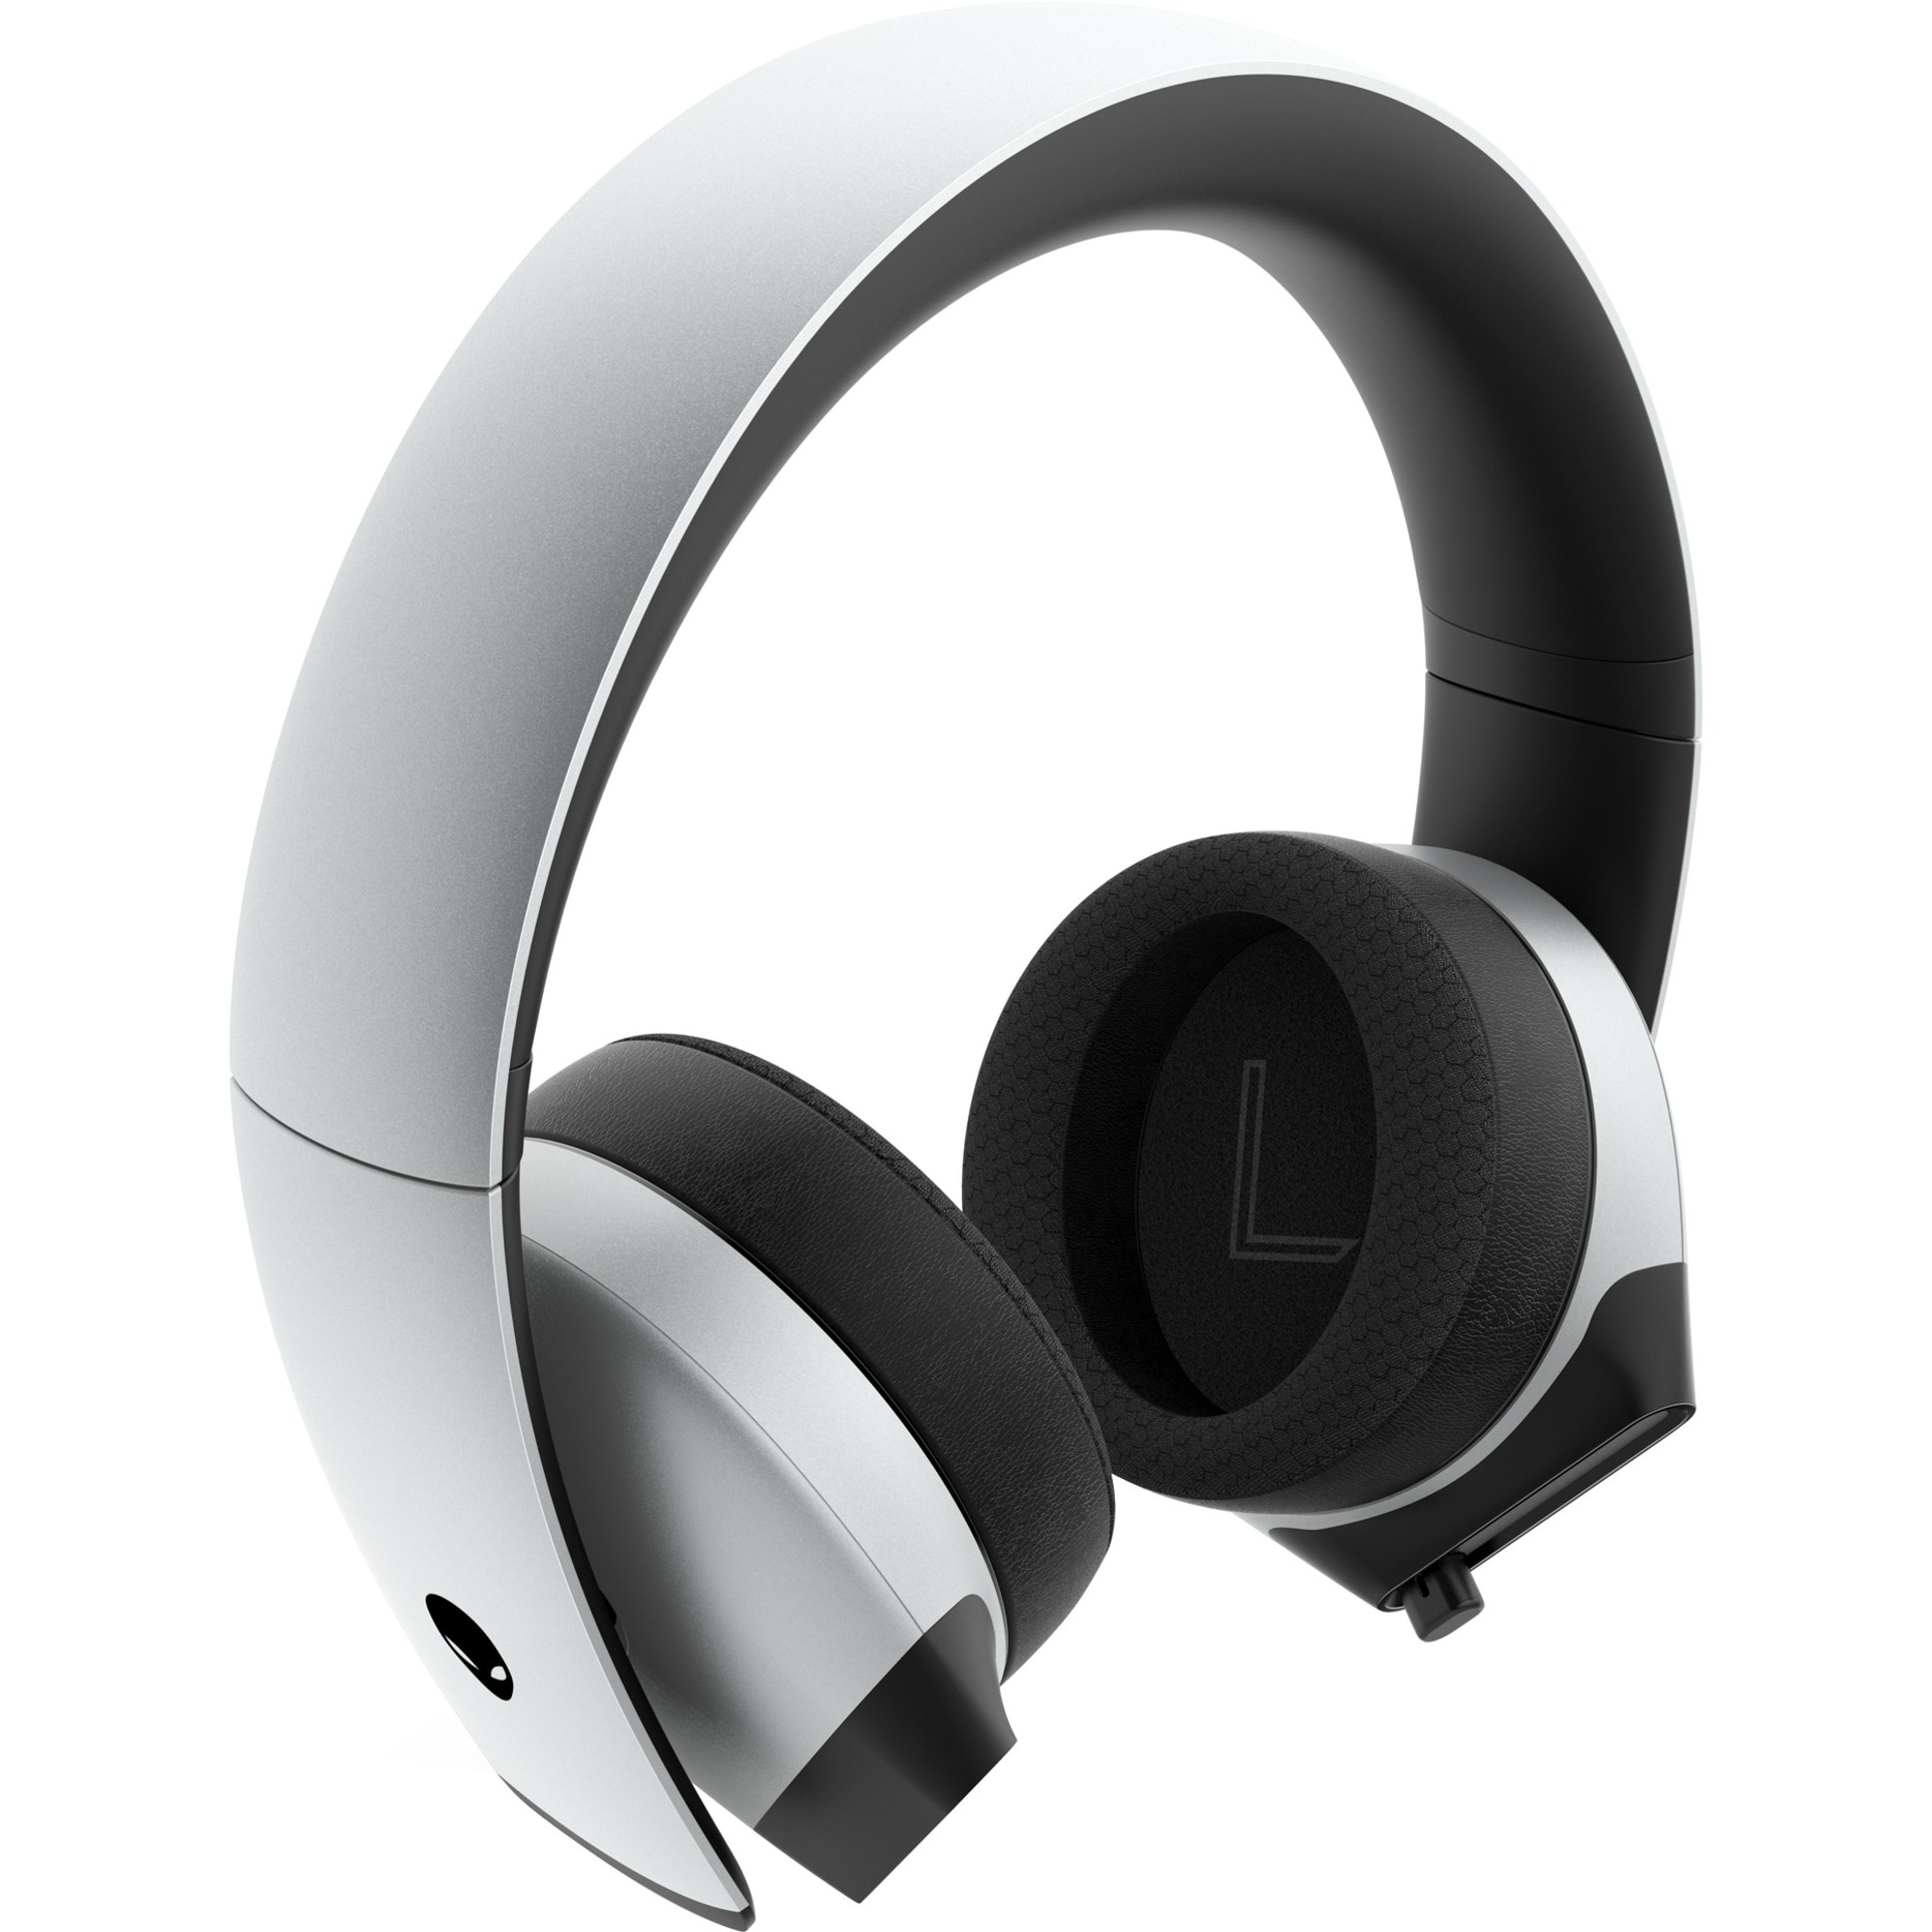 Image of Alternate - HS AW510H, Gaming-Headset online einkaufen bei Alternate